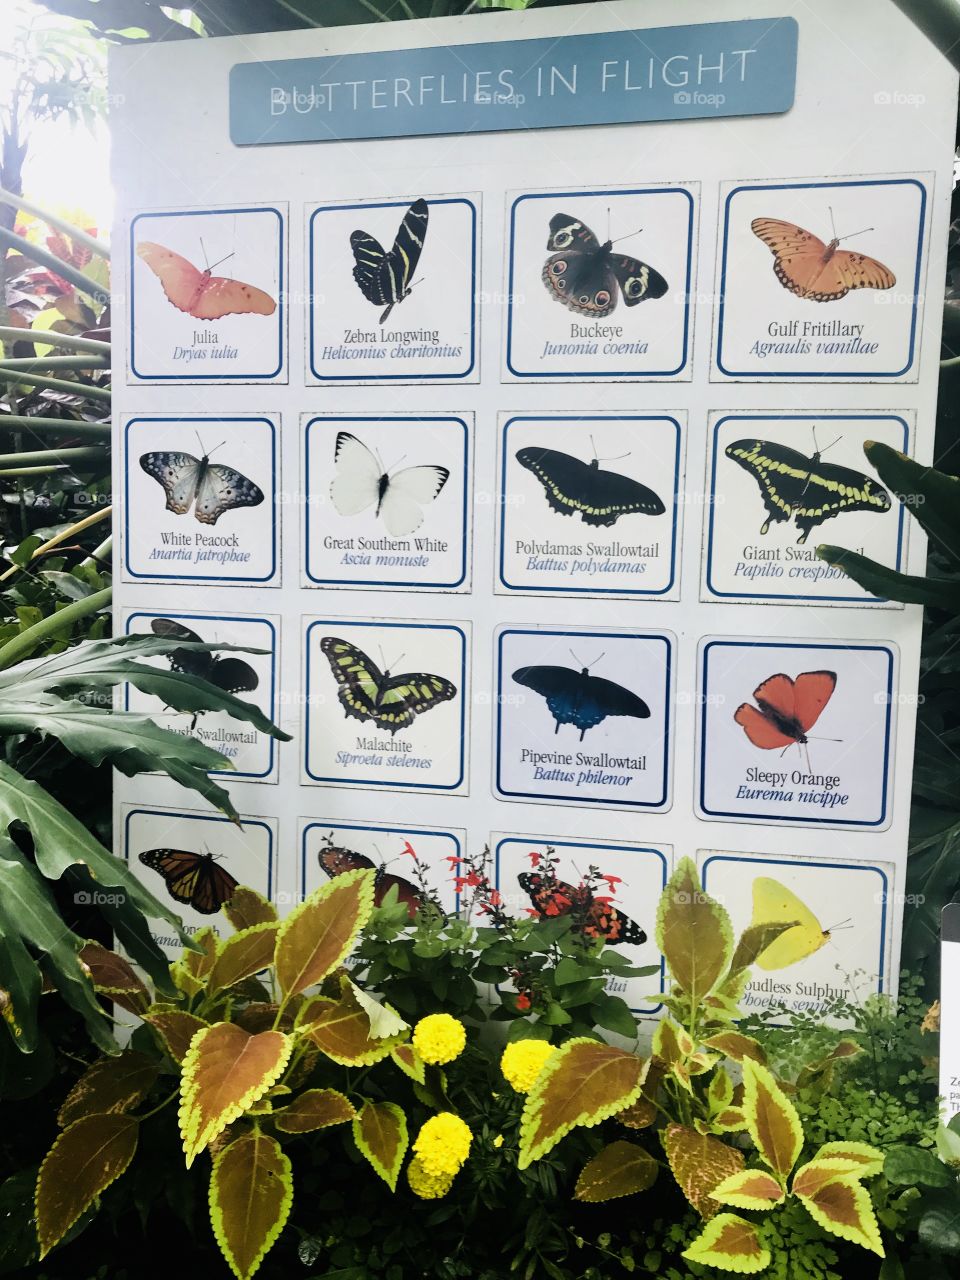 Butterflies in Flight - Phipps Conservatory & Botanical Garden - Pittsburgh - Schenley Park 